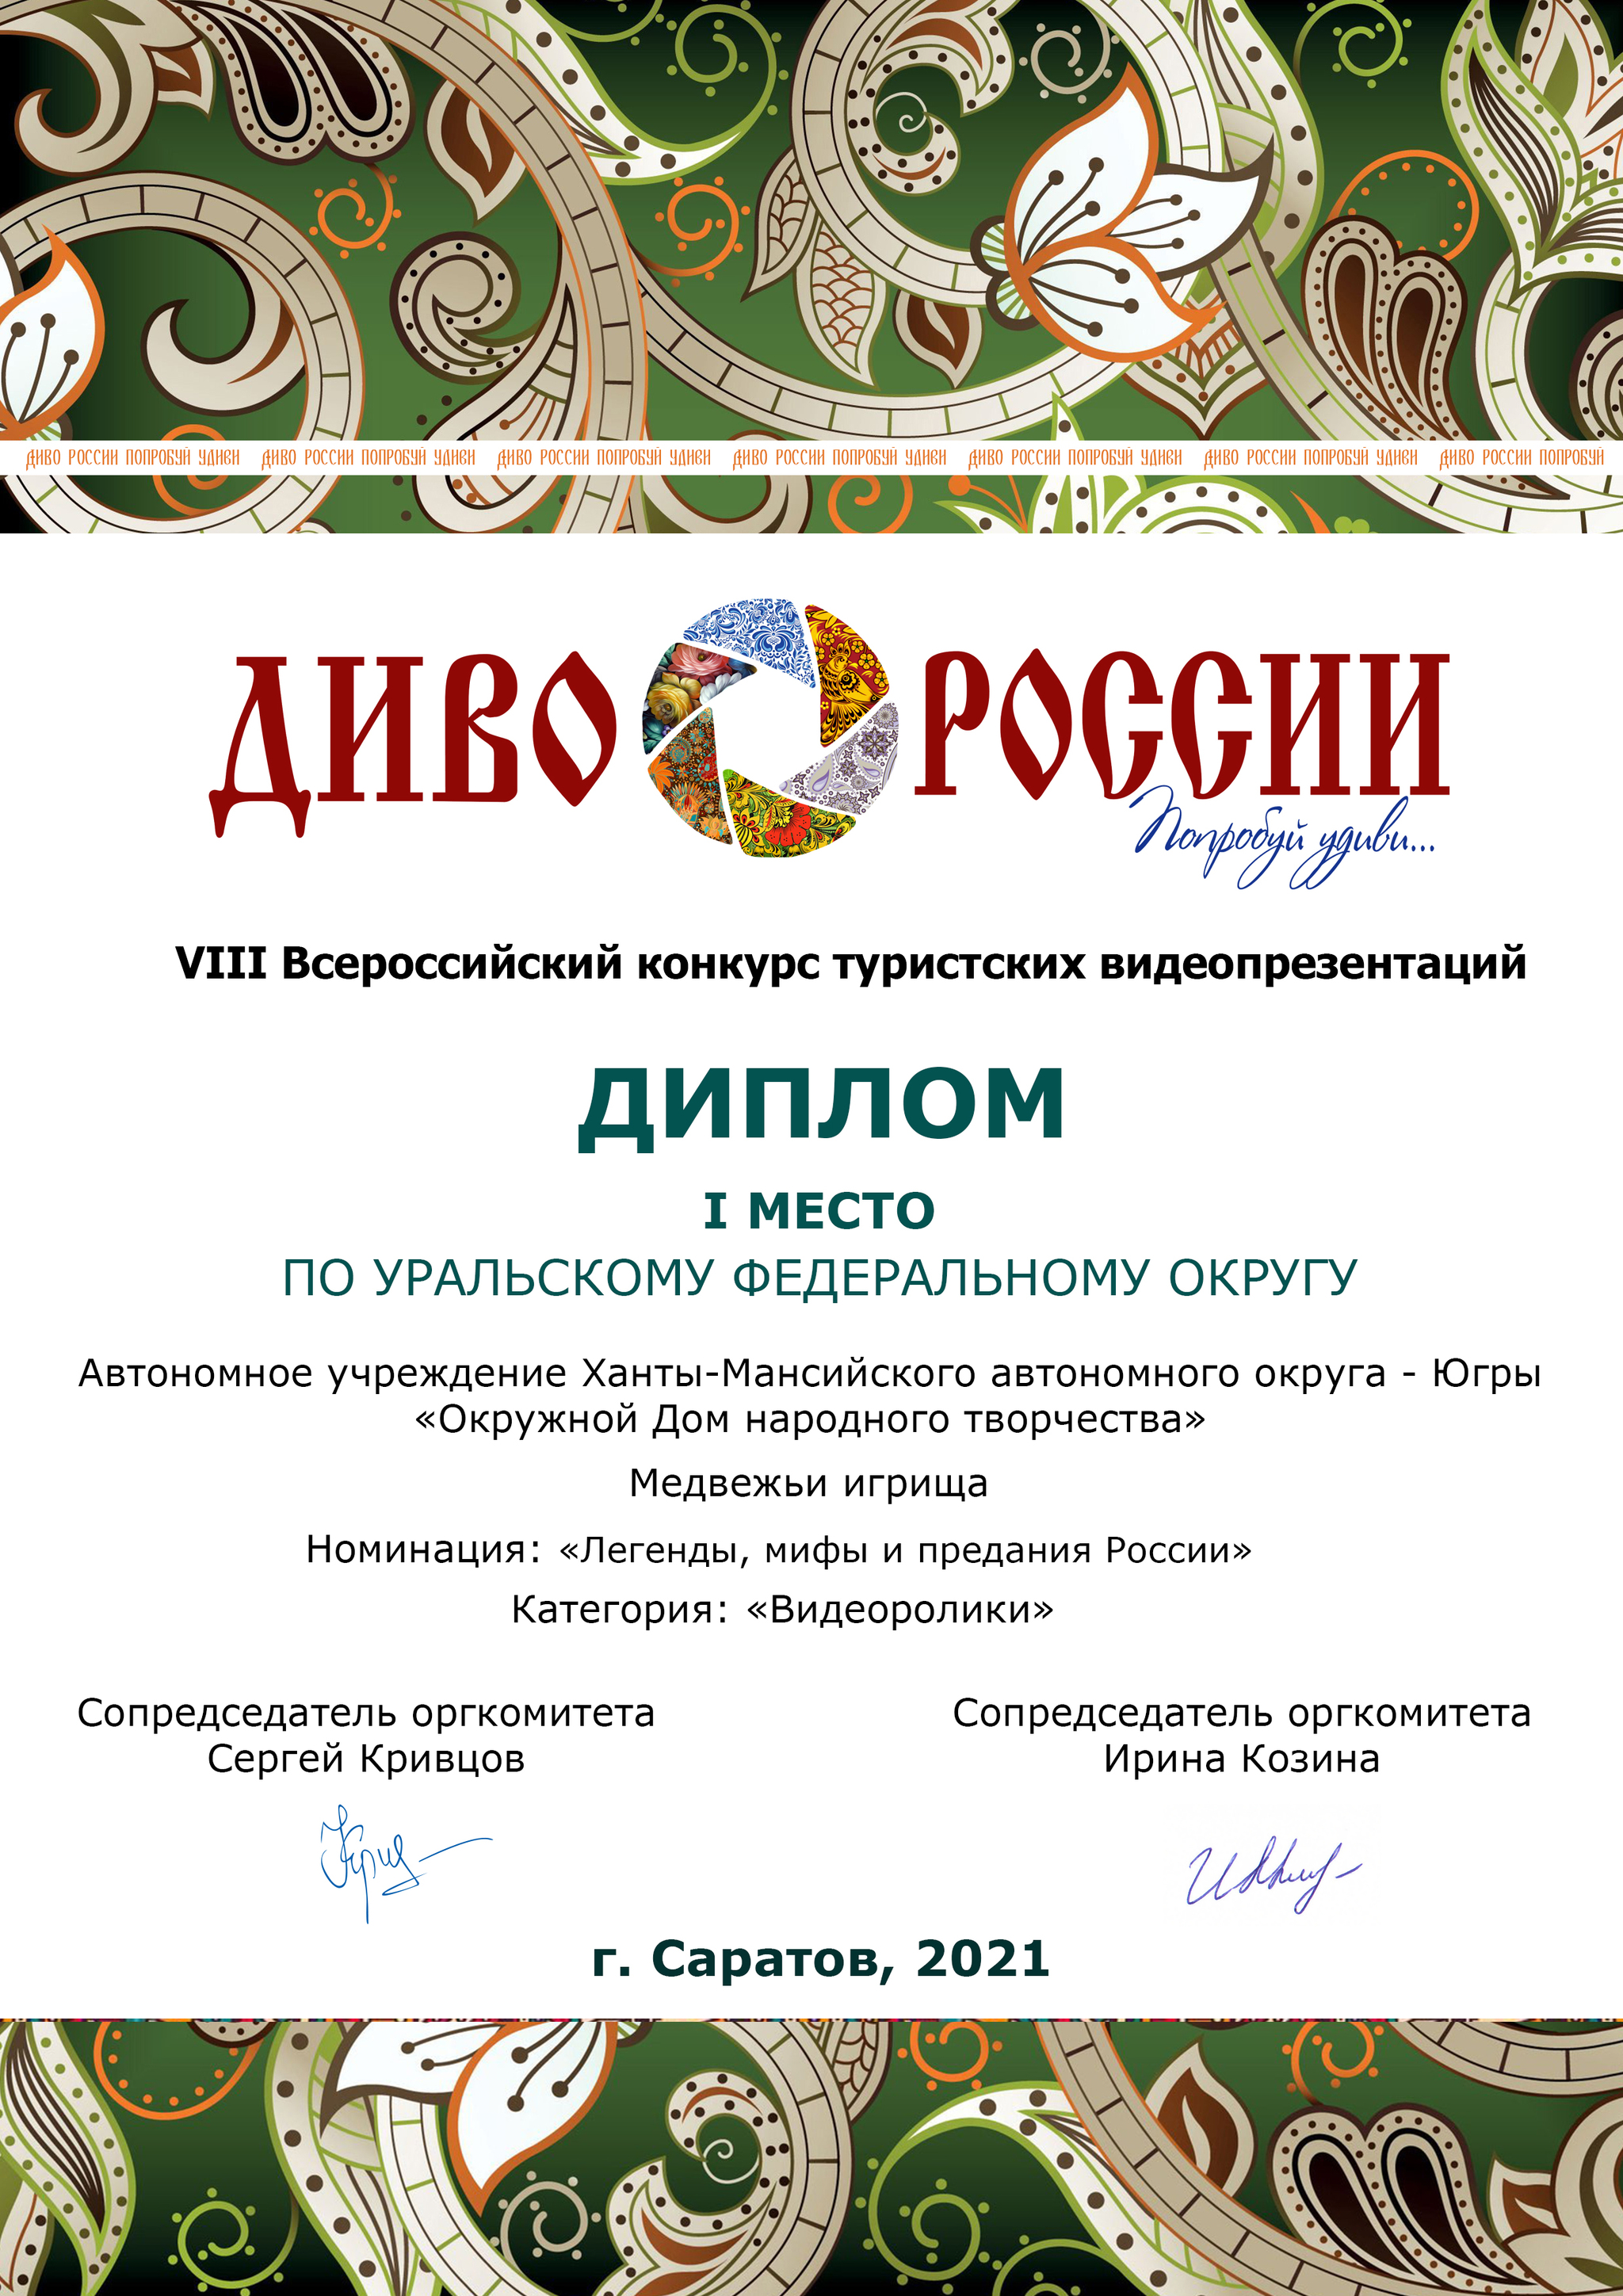 Подведены итоги окружных федеральных этапов фестиваля- конкурса «Диво России» 2021 года